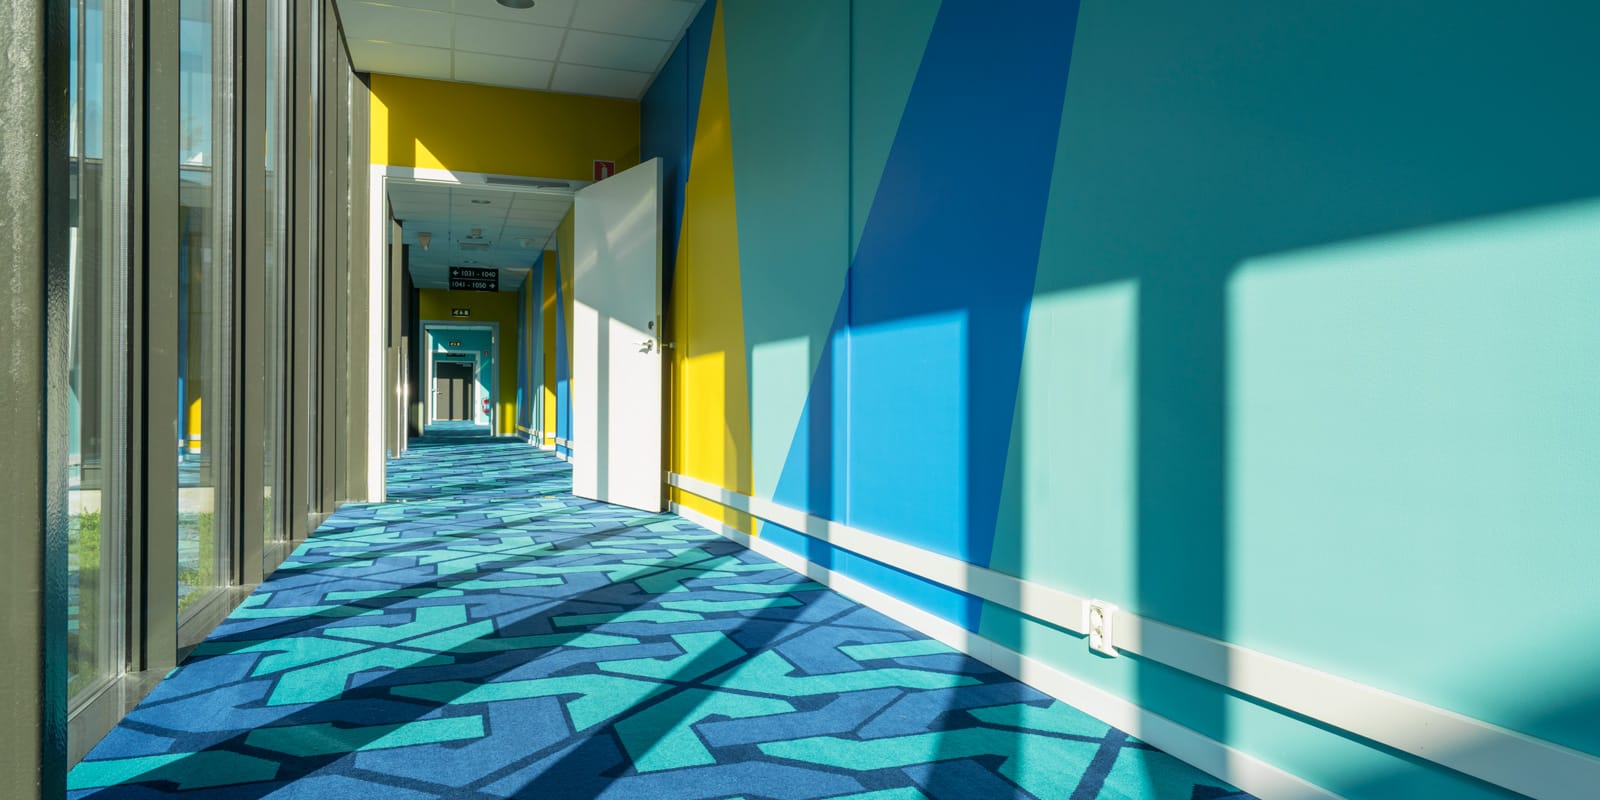 korridor